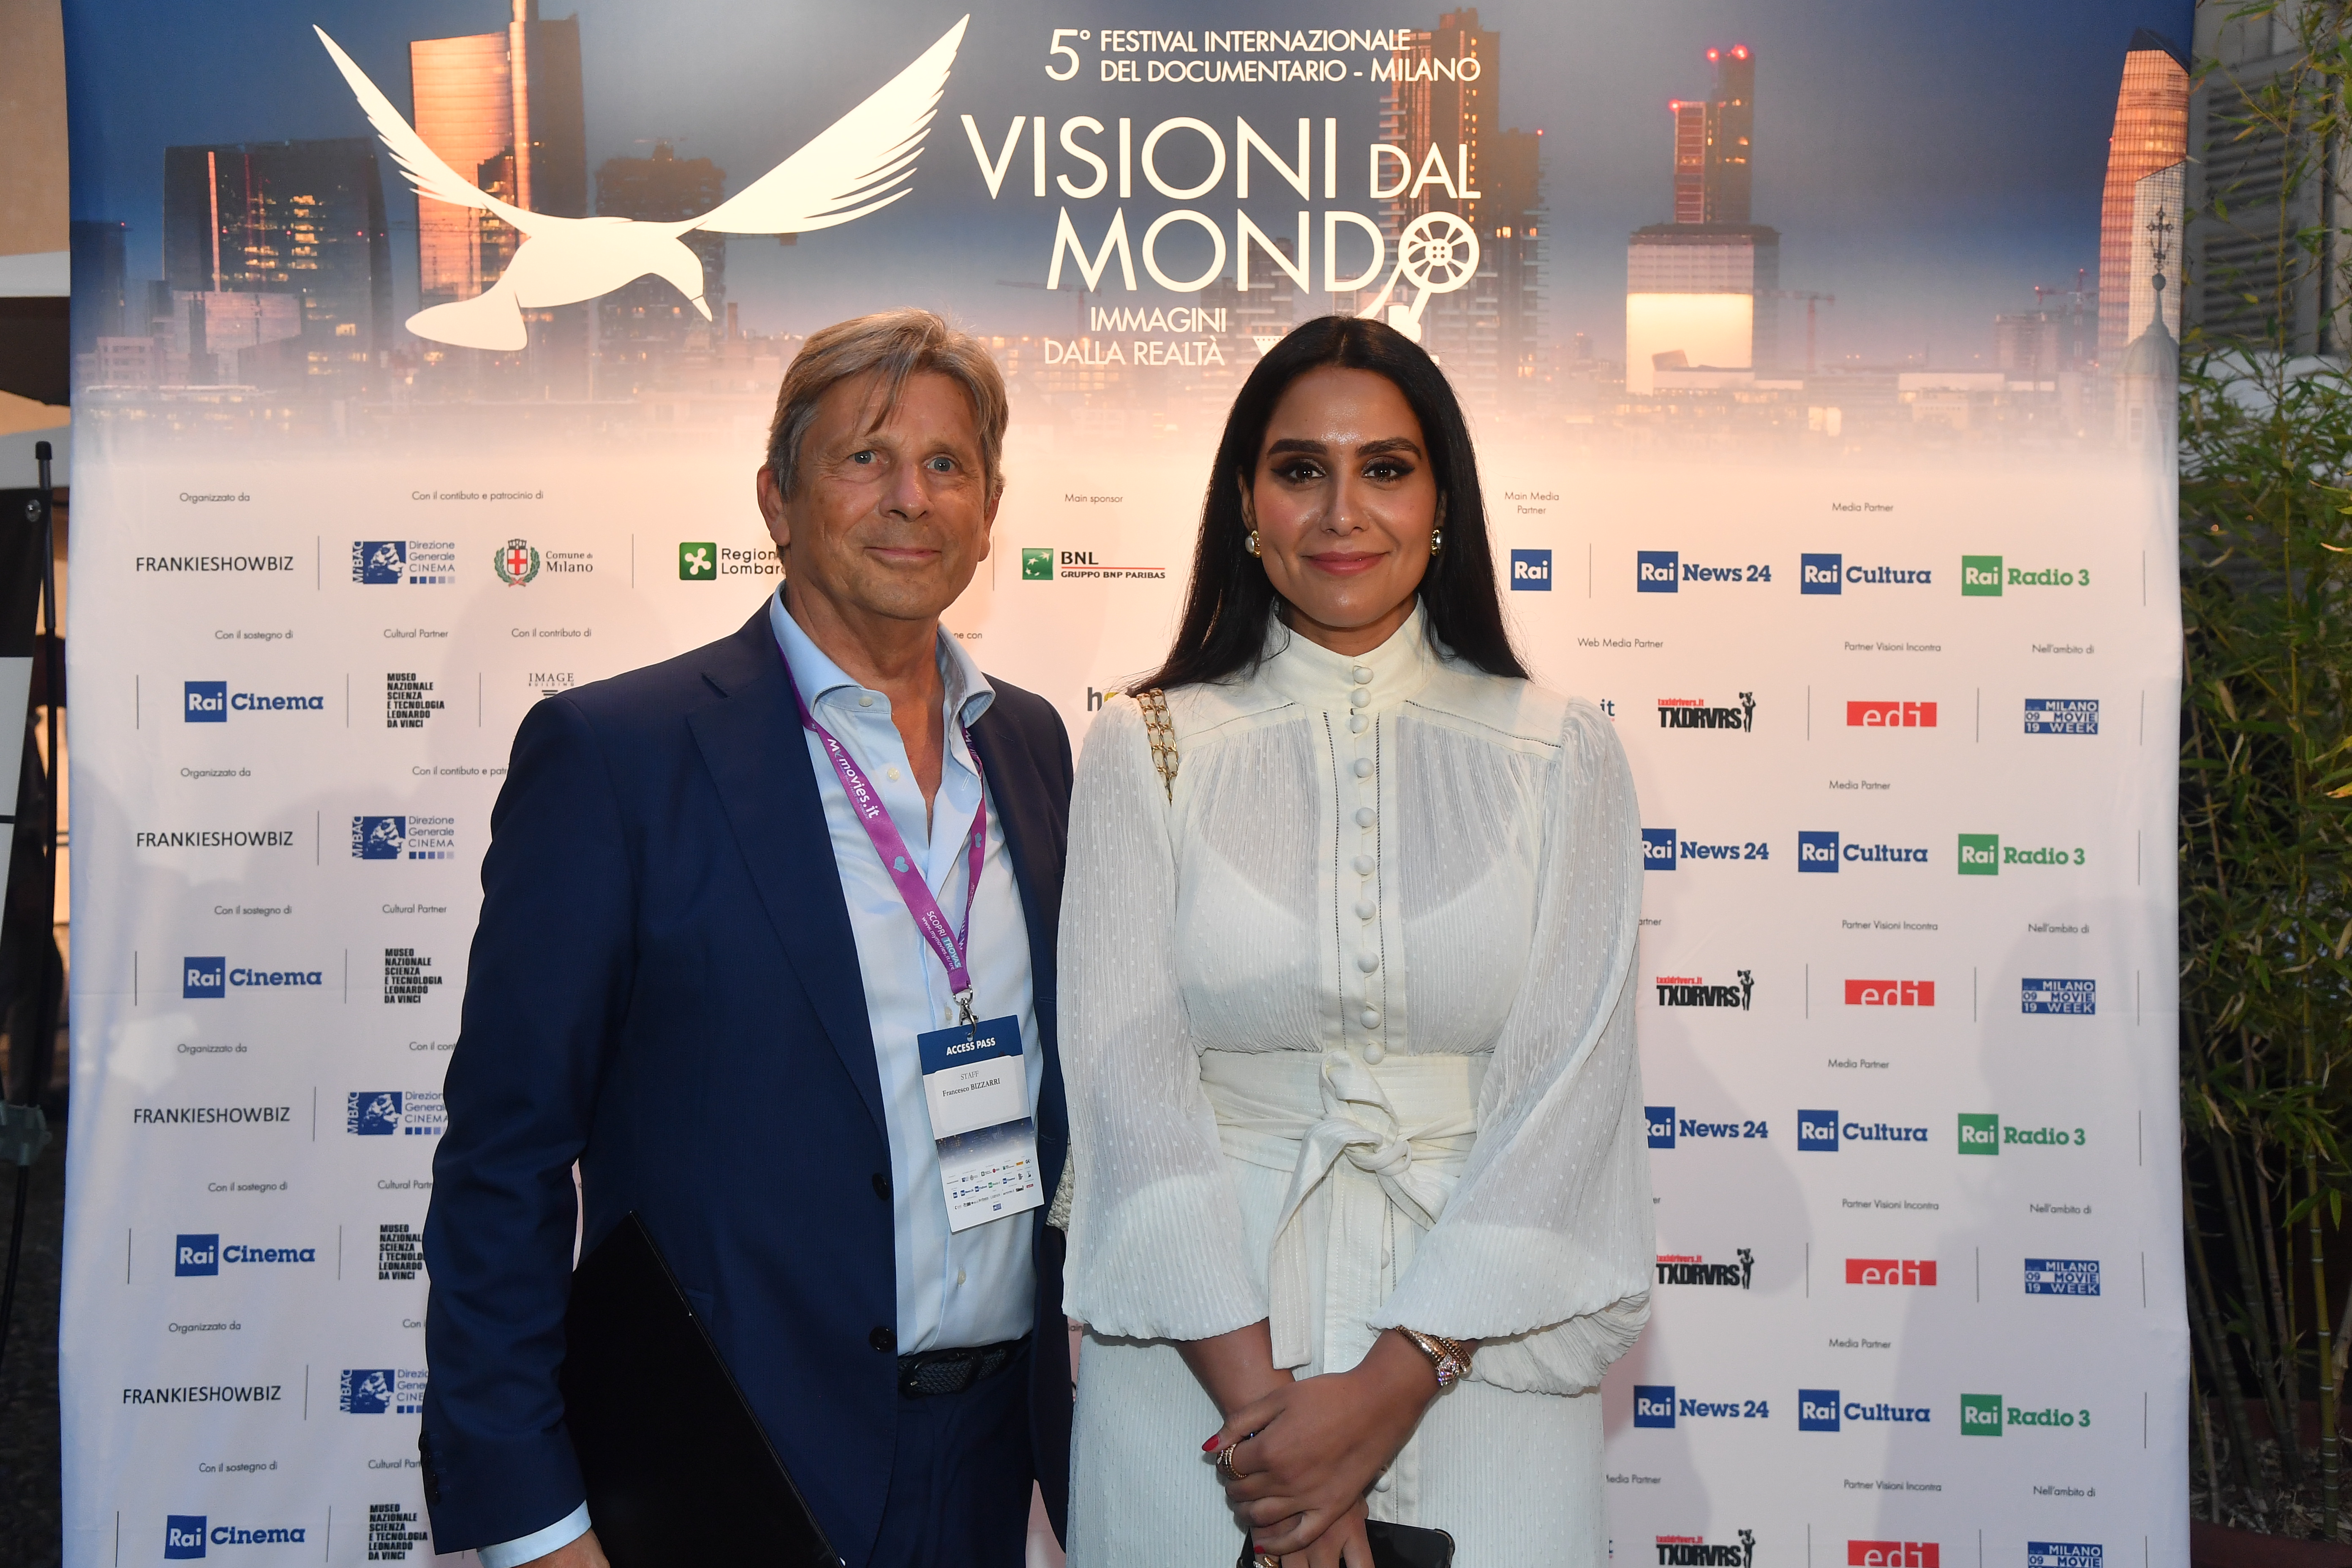 Francesco Bizzarri, Fondatore e Direttore del 5° Festival Internazionale del Documentario Visioni dal Mondo, Immagini dalla Realtà e Mariam BinLaden